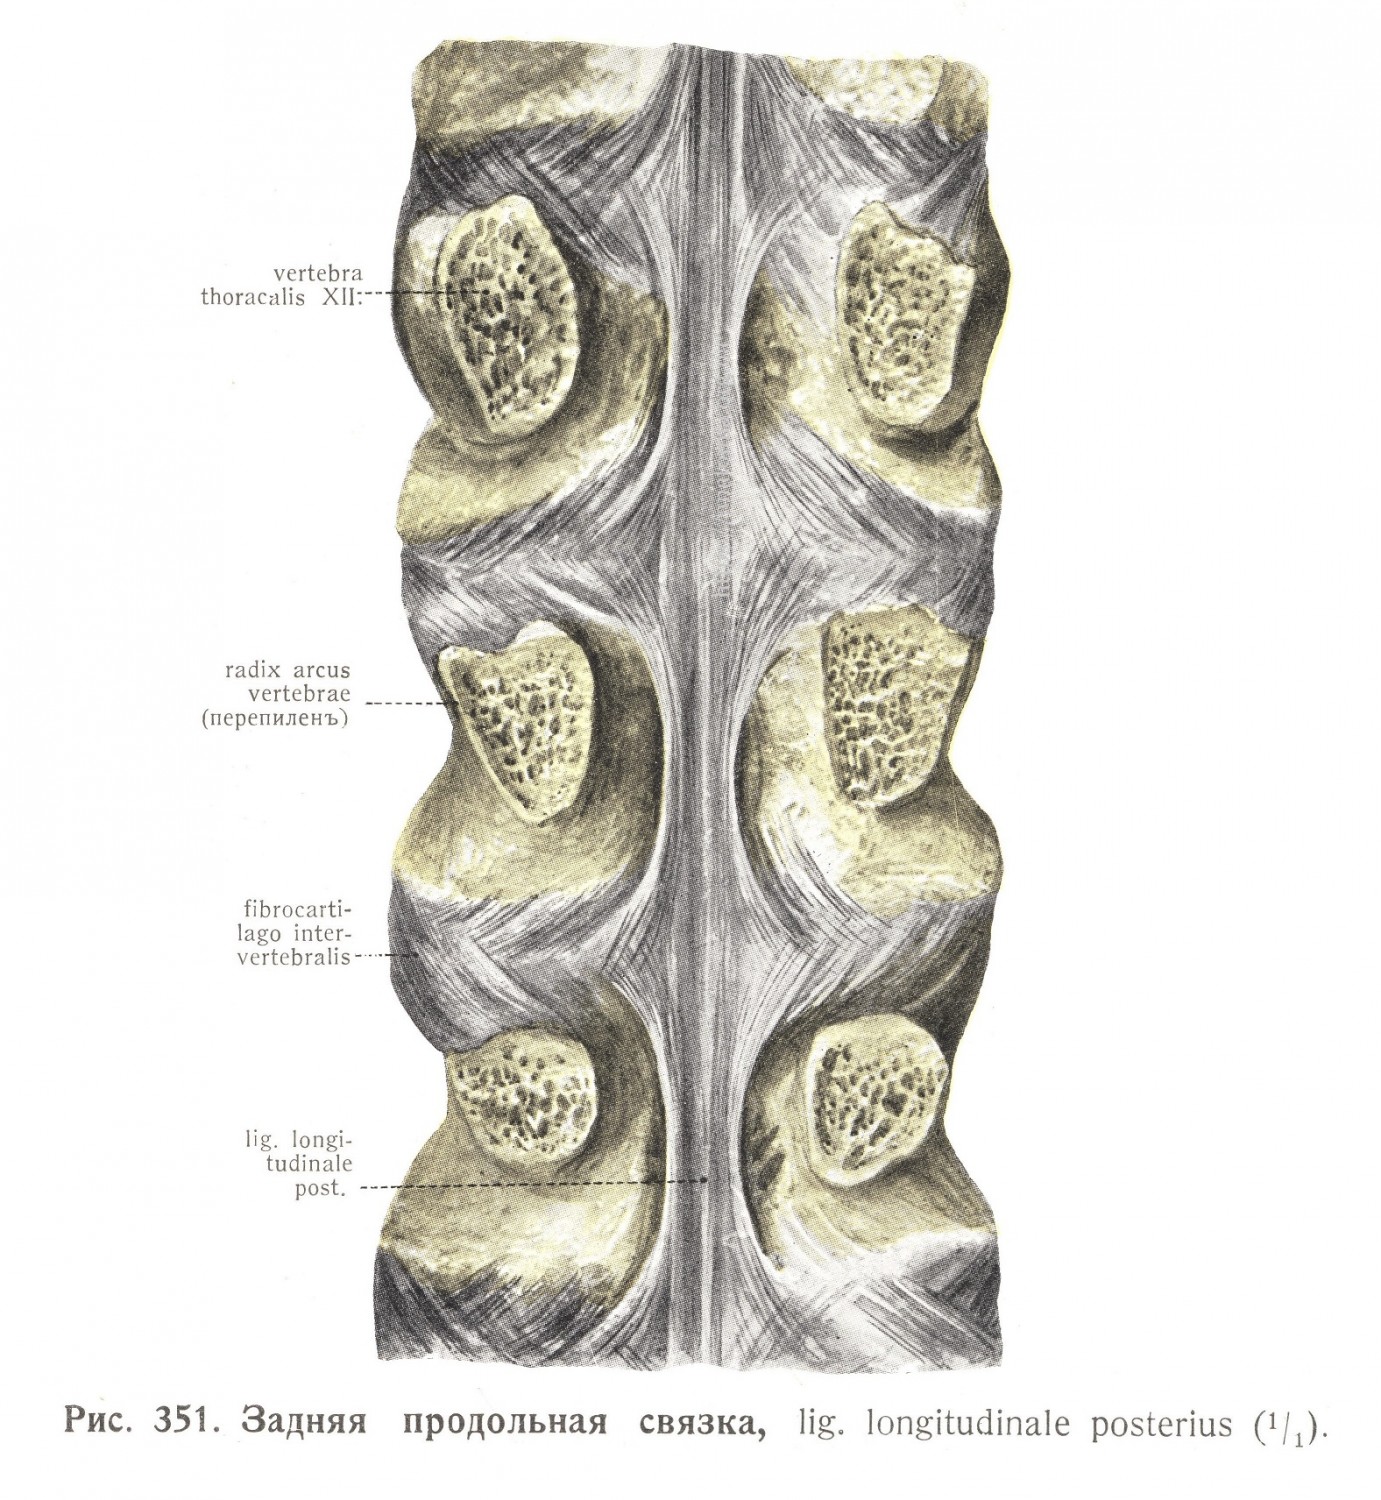 Задняя продольная связка, Ligamentum longitudinale posterius